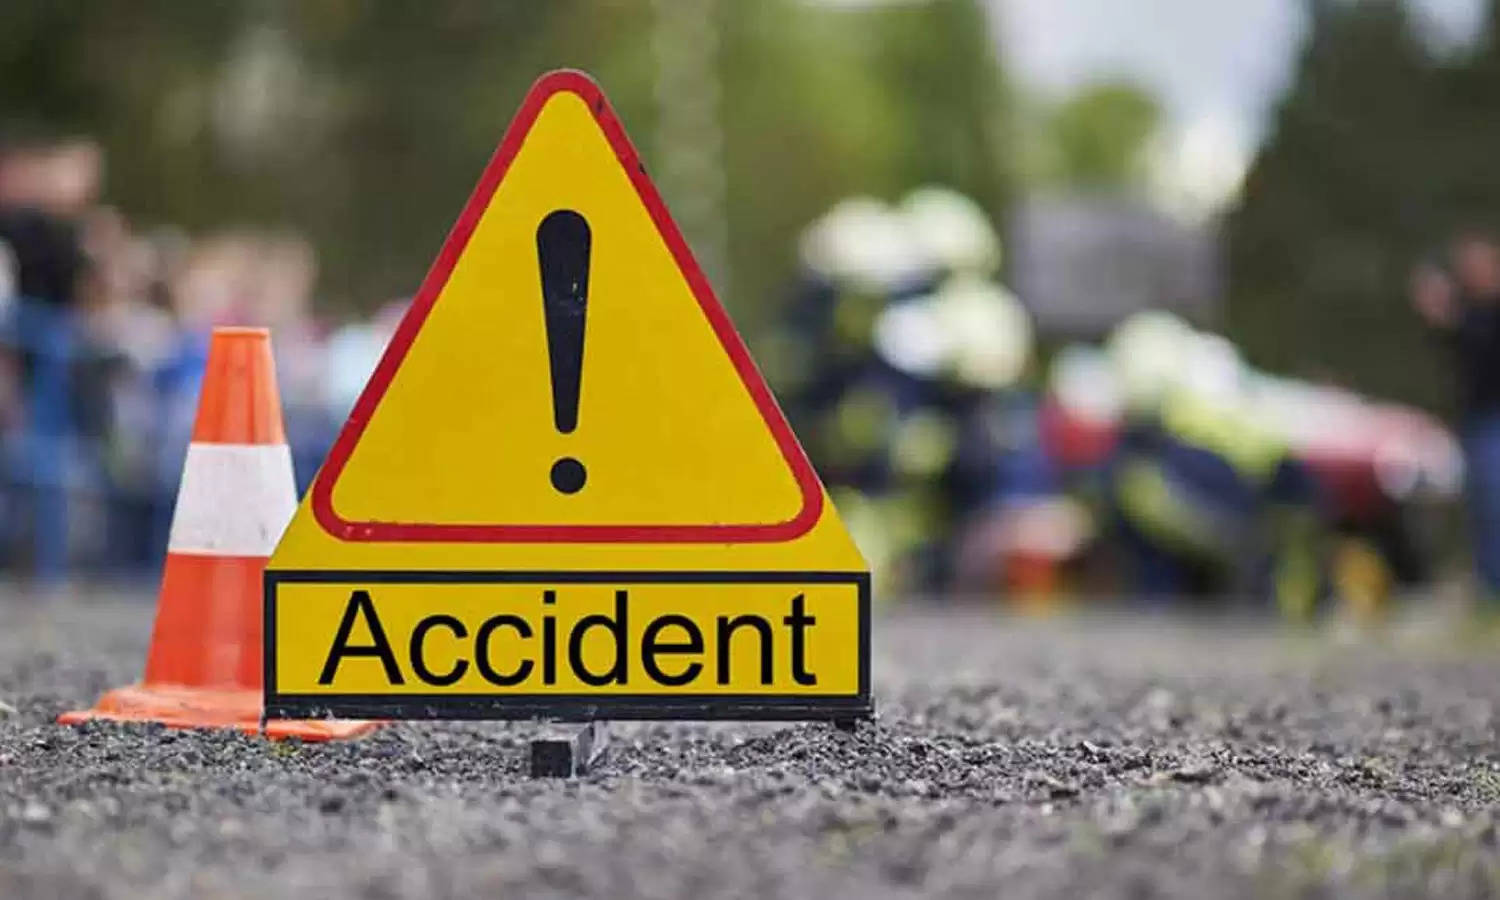 Uttarakhand News Bulletin-47 : रपटे में फंसी कार, एक की मौत, दो घायल; जानिए विकासनगर की ऐसी ही तमाम छोटी बड़ी खबरें...